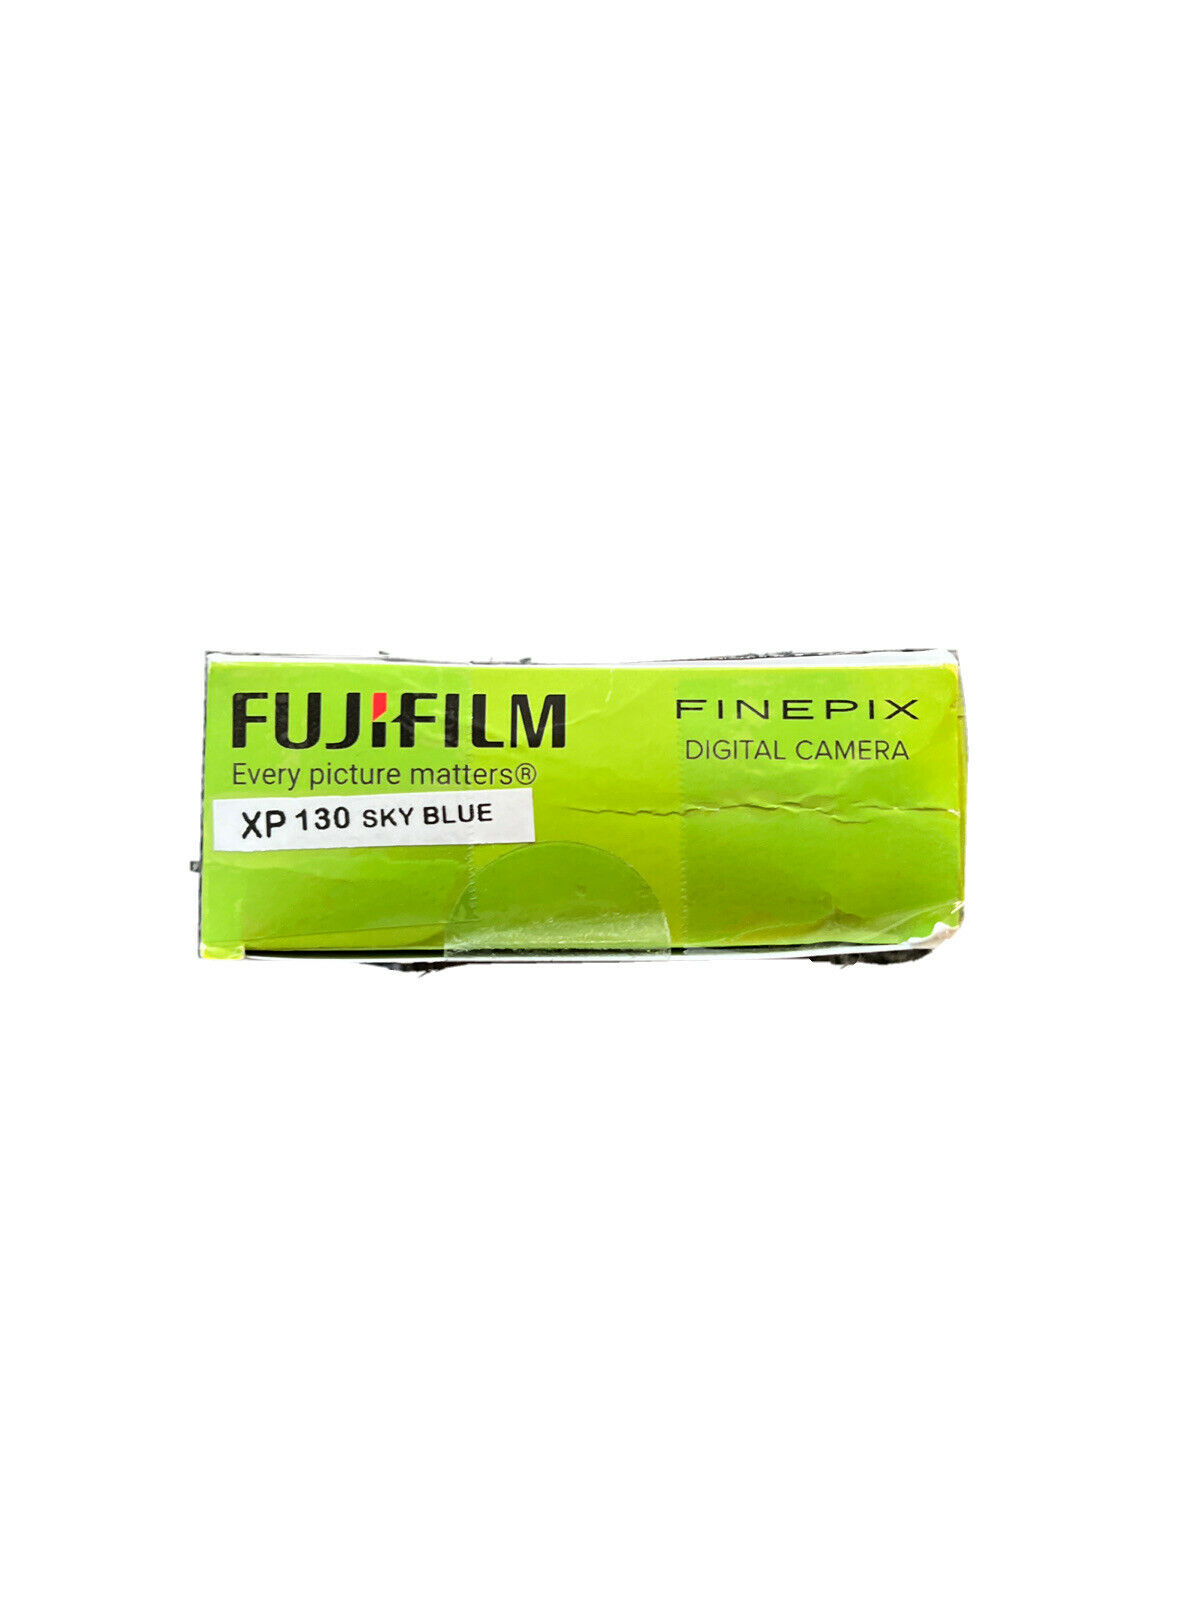 FUJIFILM FinePix XP130 Digital Camera SKY BLUE Plus Bundle